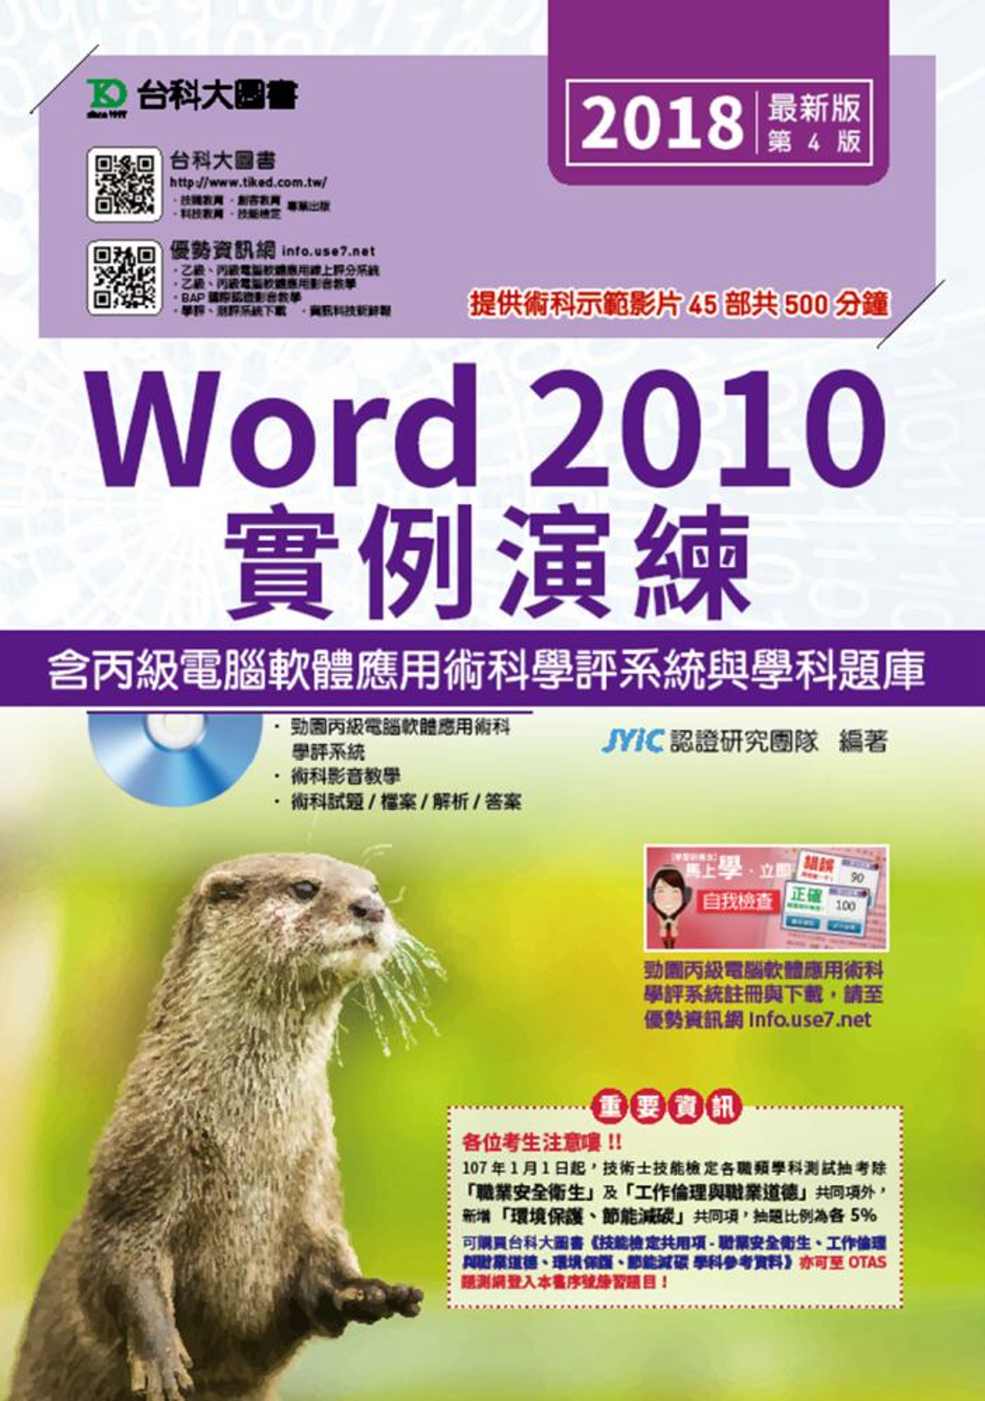 Word 2010實例演練含丙級...